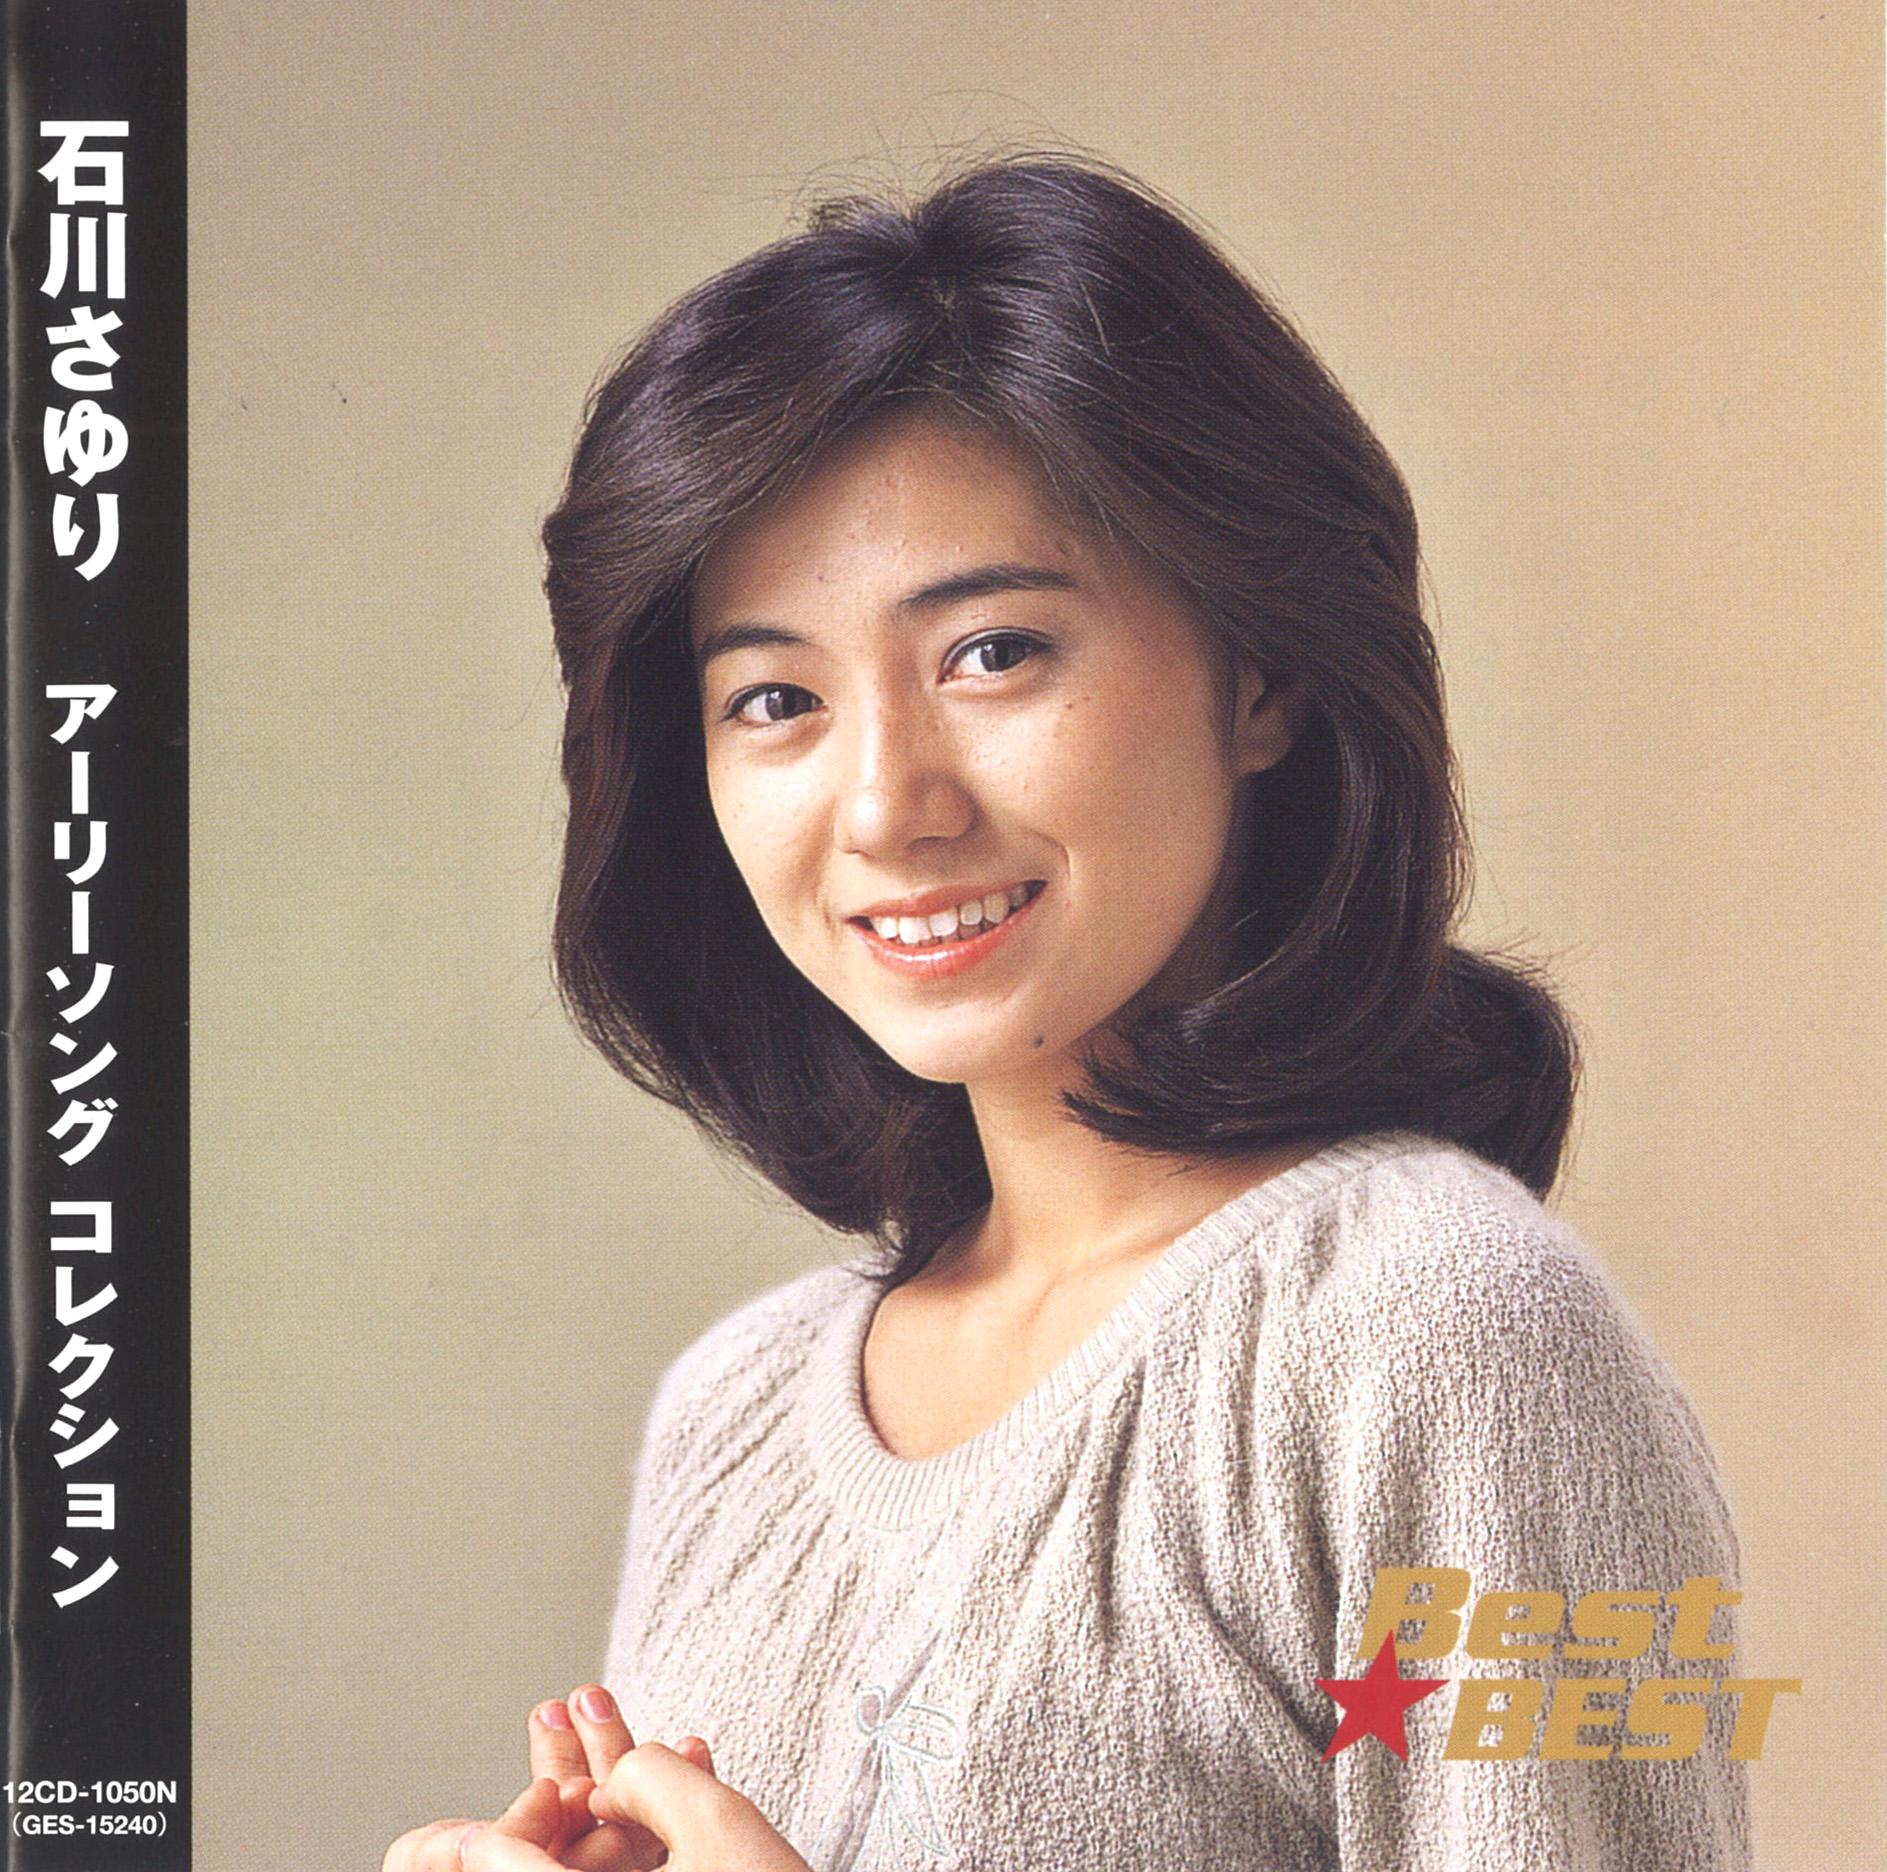 歌曲《能登半岛》(のとはんとう)是日本著名演歌歌手石川小百合在1977